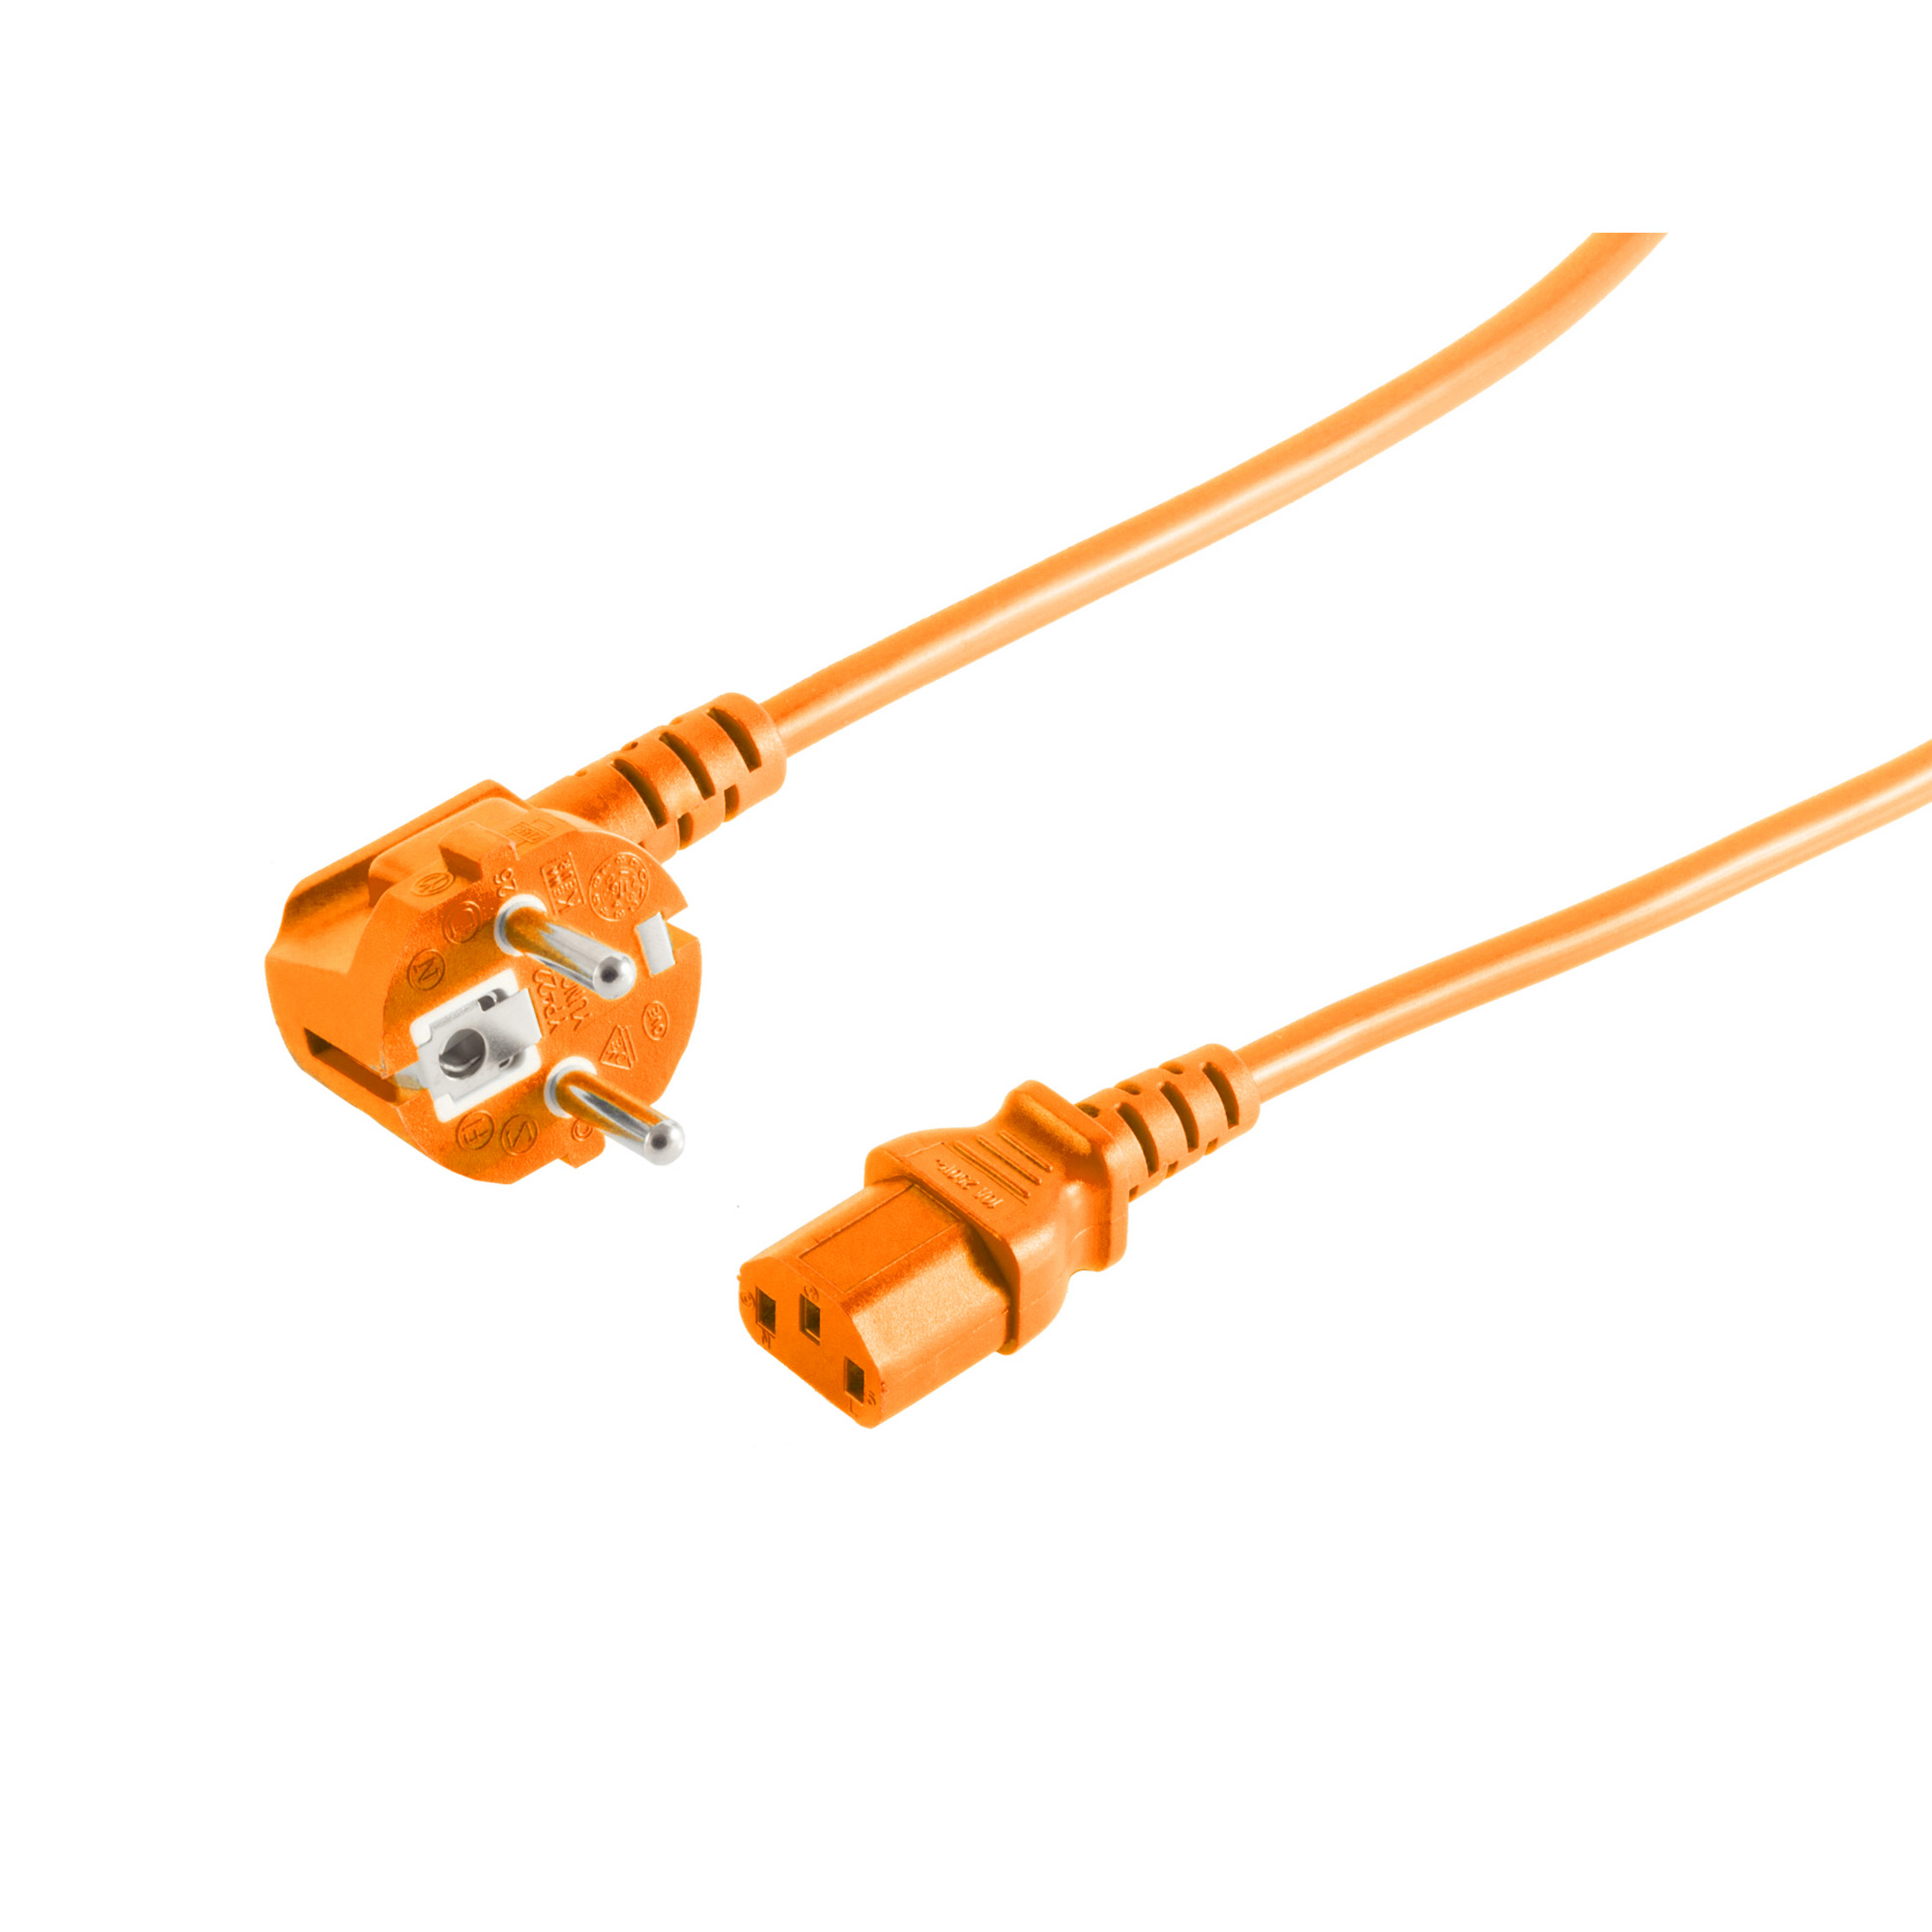 90°/Kaltgerätebuchse Schutzkontakt S/CONN 1,8m MAXIMUM CONNECTIVITY Netzanschlusskabel orange